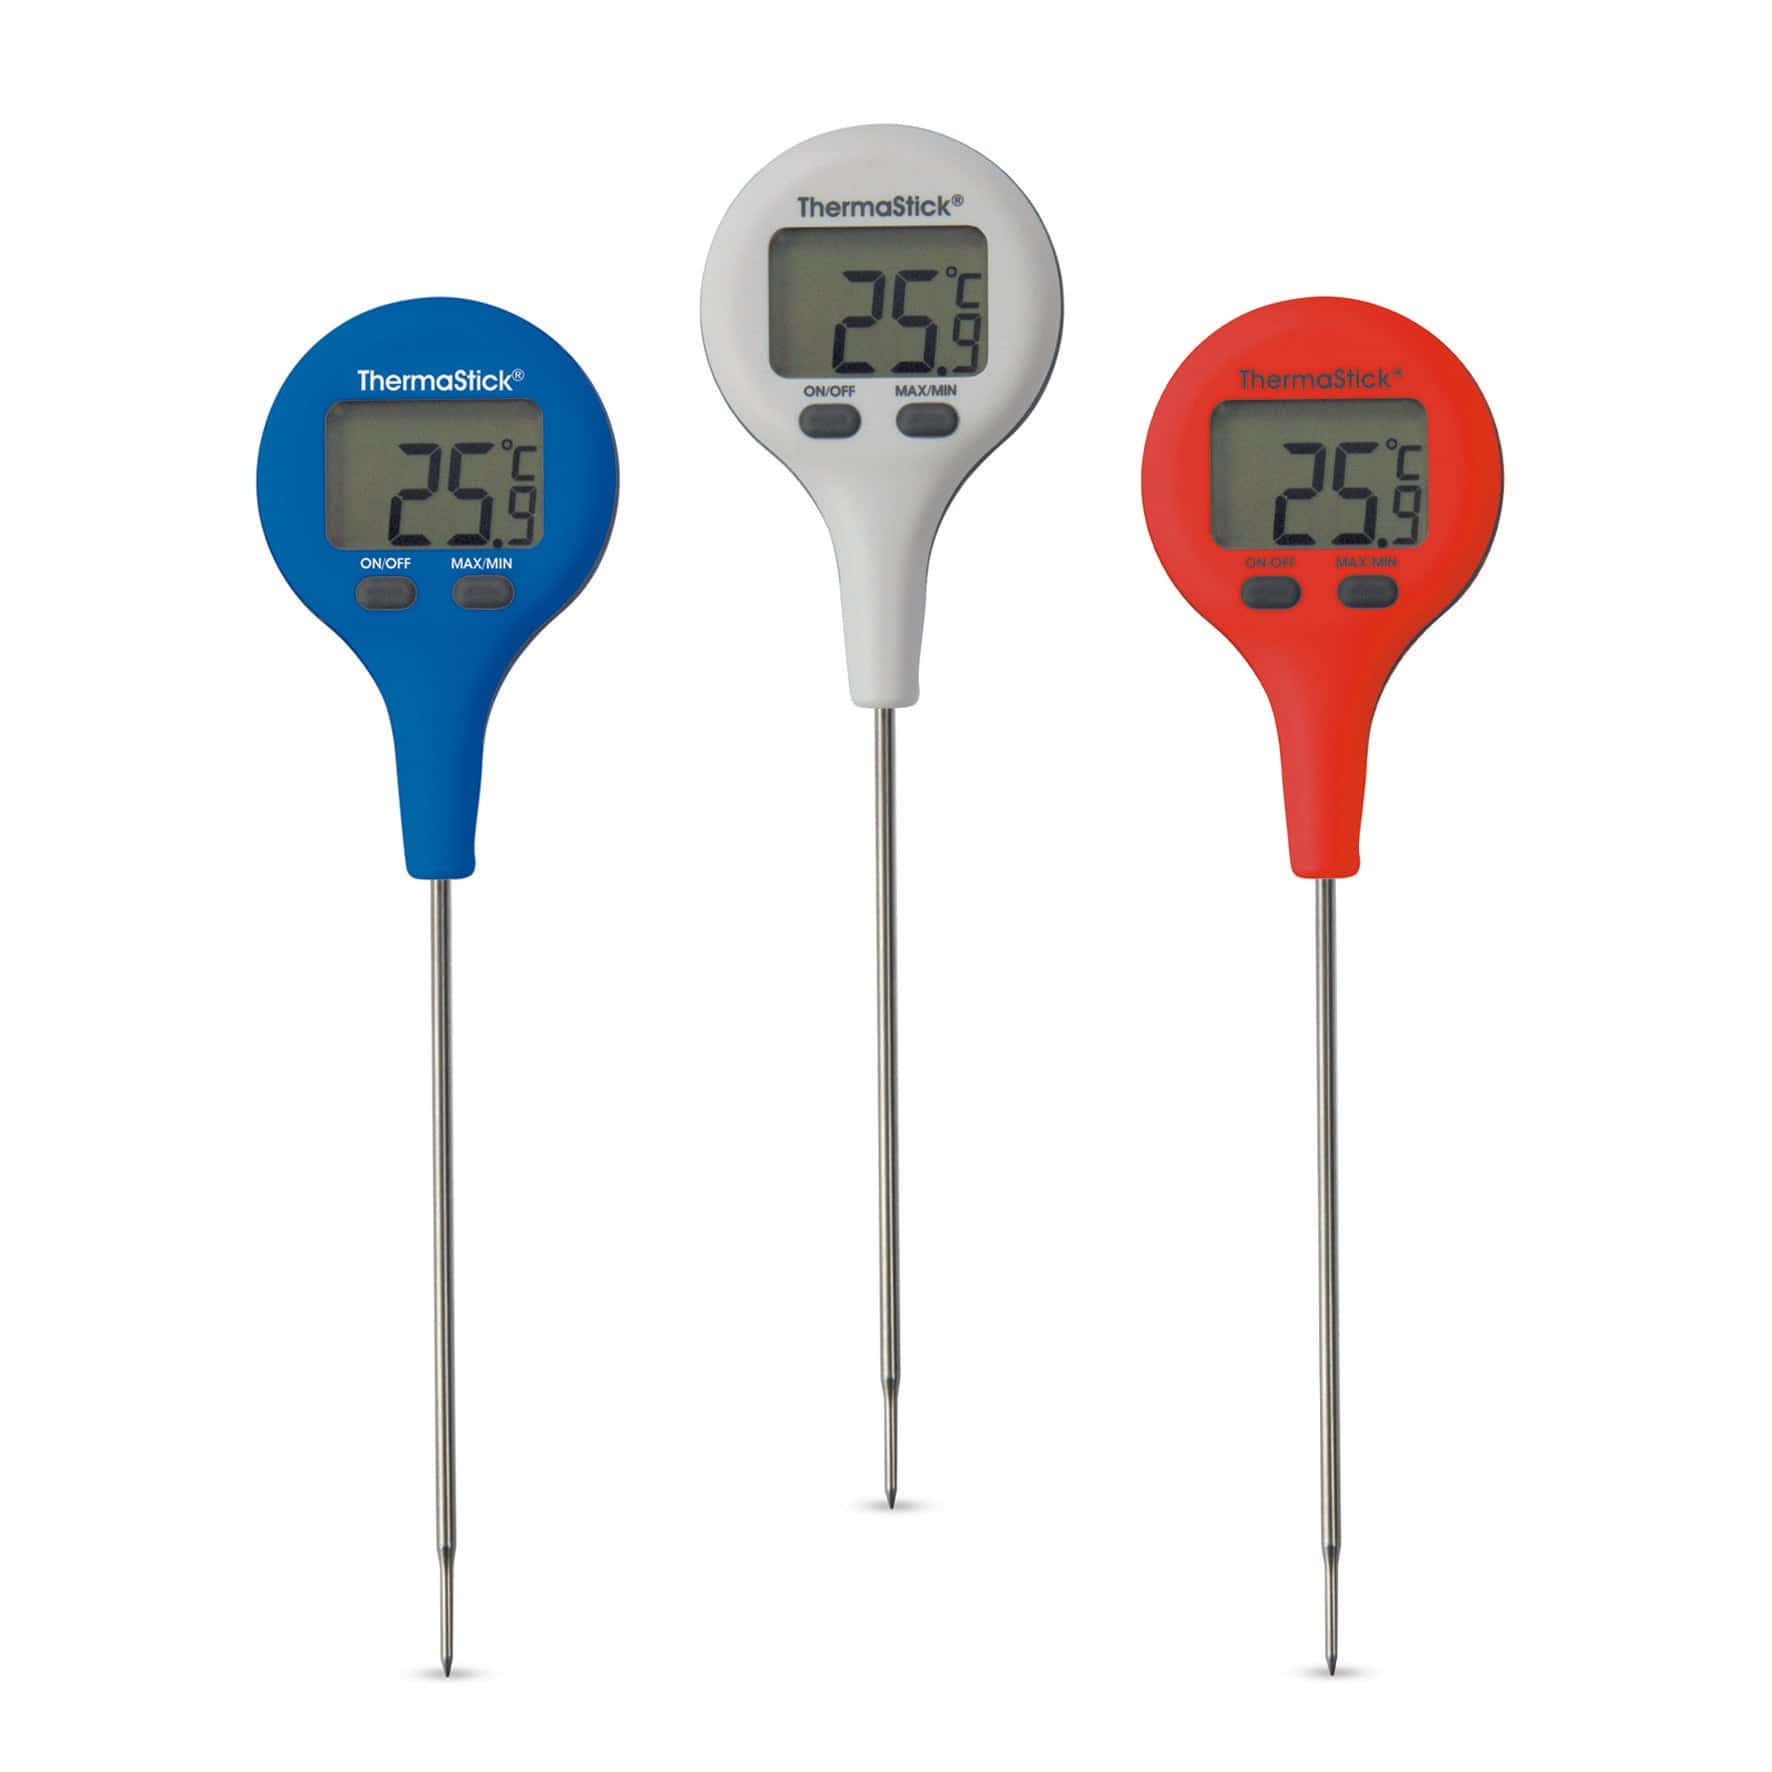 trois thermomètres numériques Thermomètres de poche ThermaStick sur fond blanc.